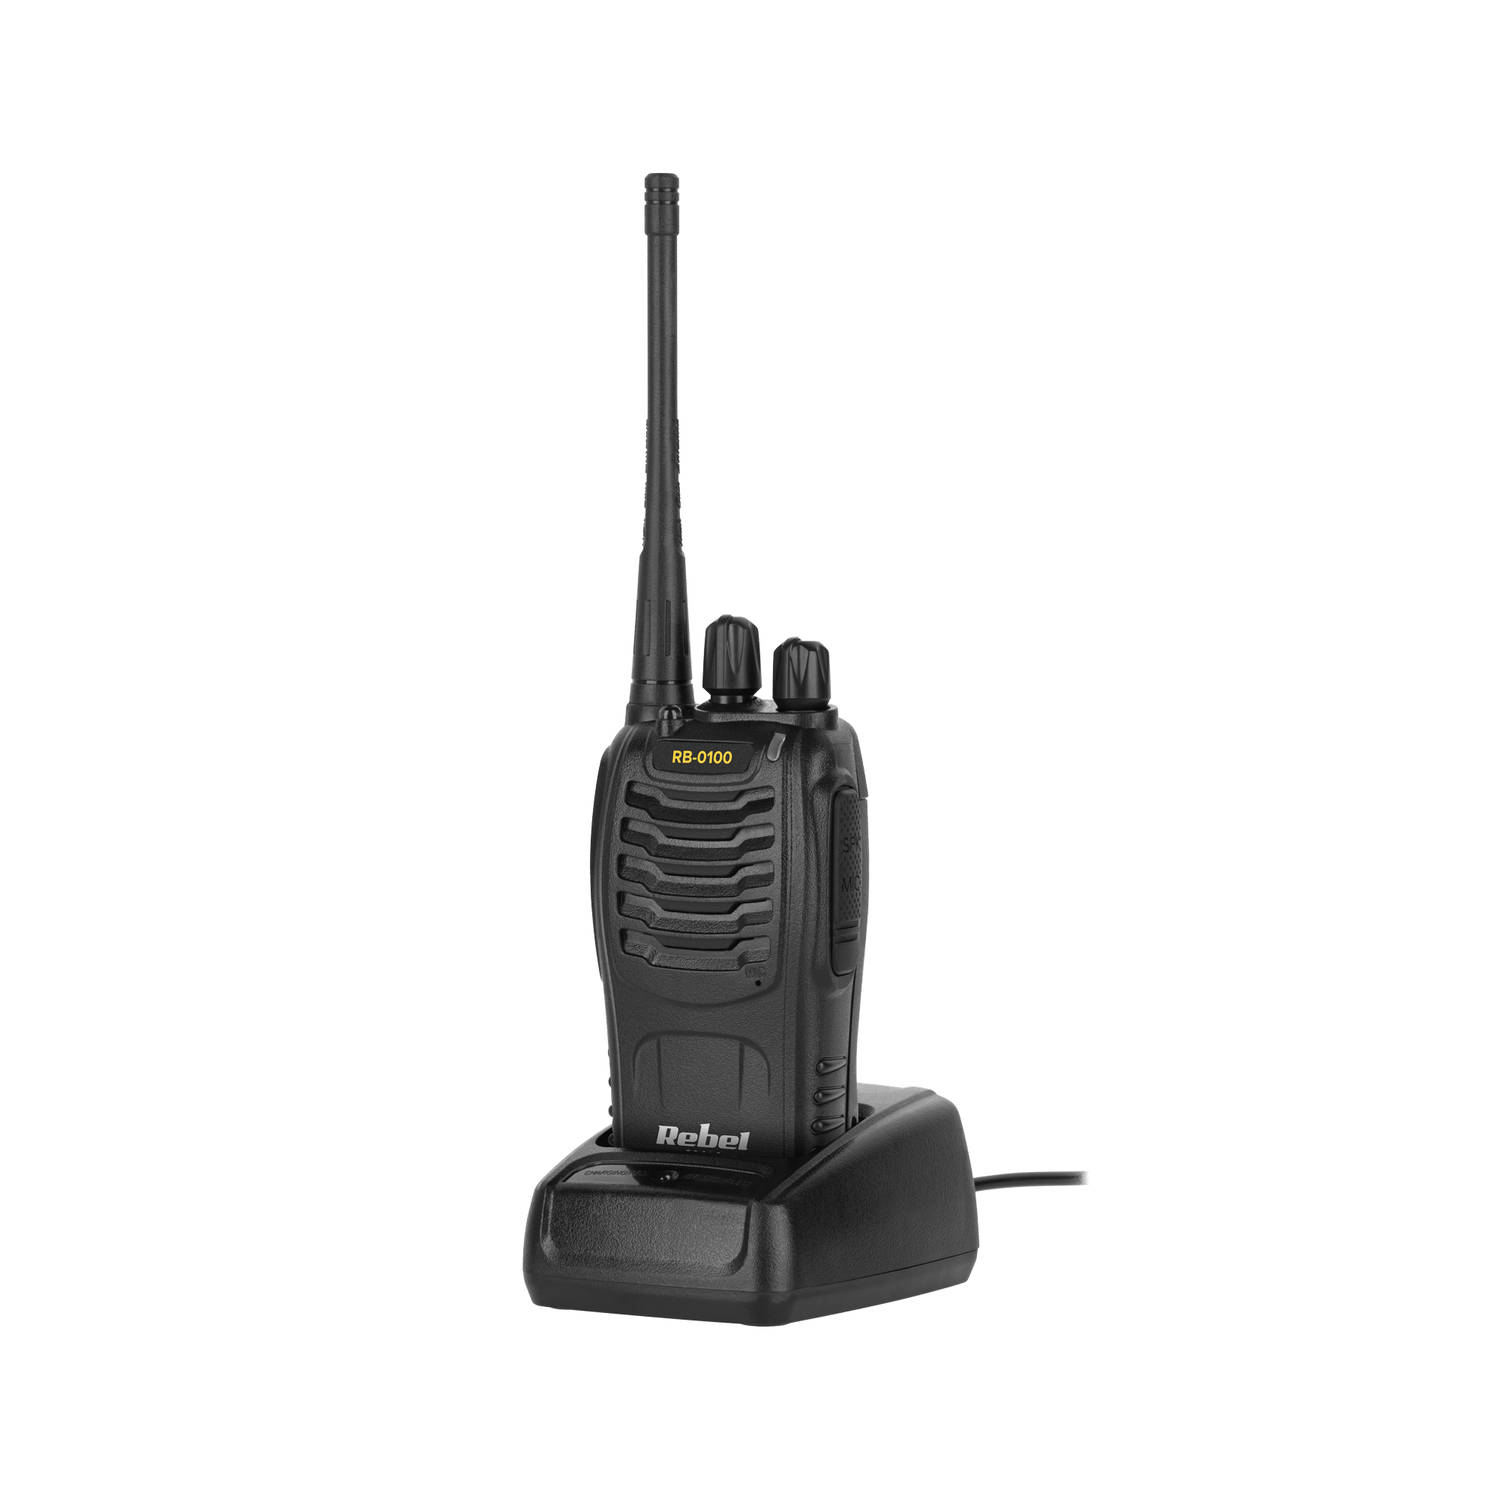 Rebel PMR RB-100 portofoon - walkie talkie - handradio - 4km bereik - VOX - 16 kanalen - 450Mhz - met led zaklamp - 5W - met oortje